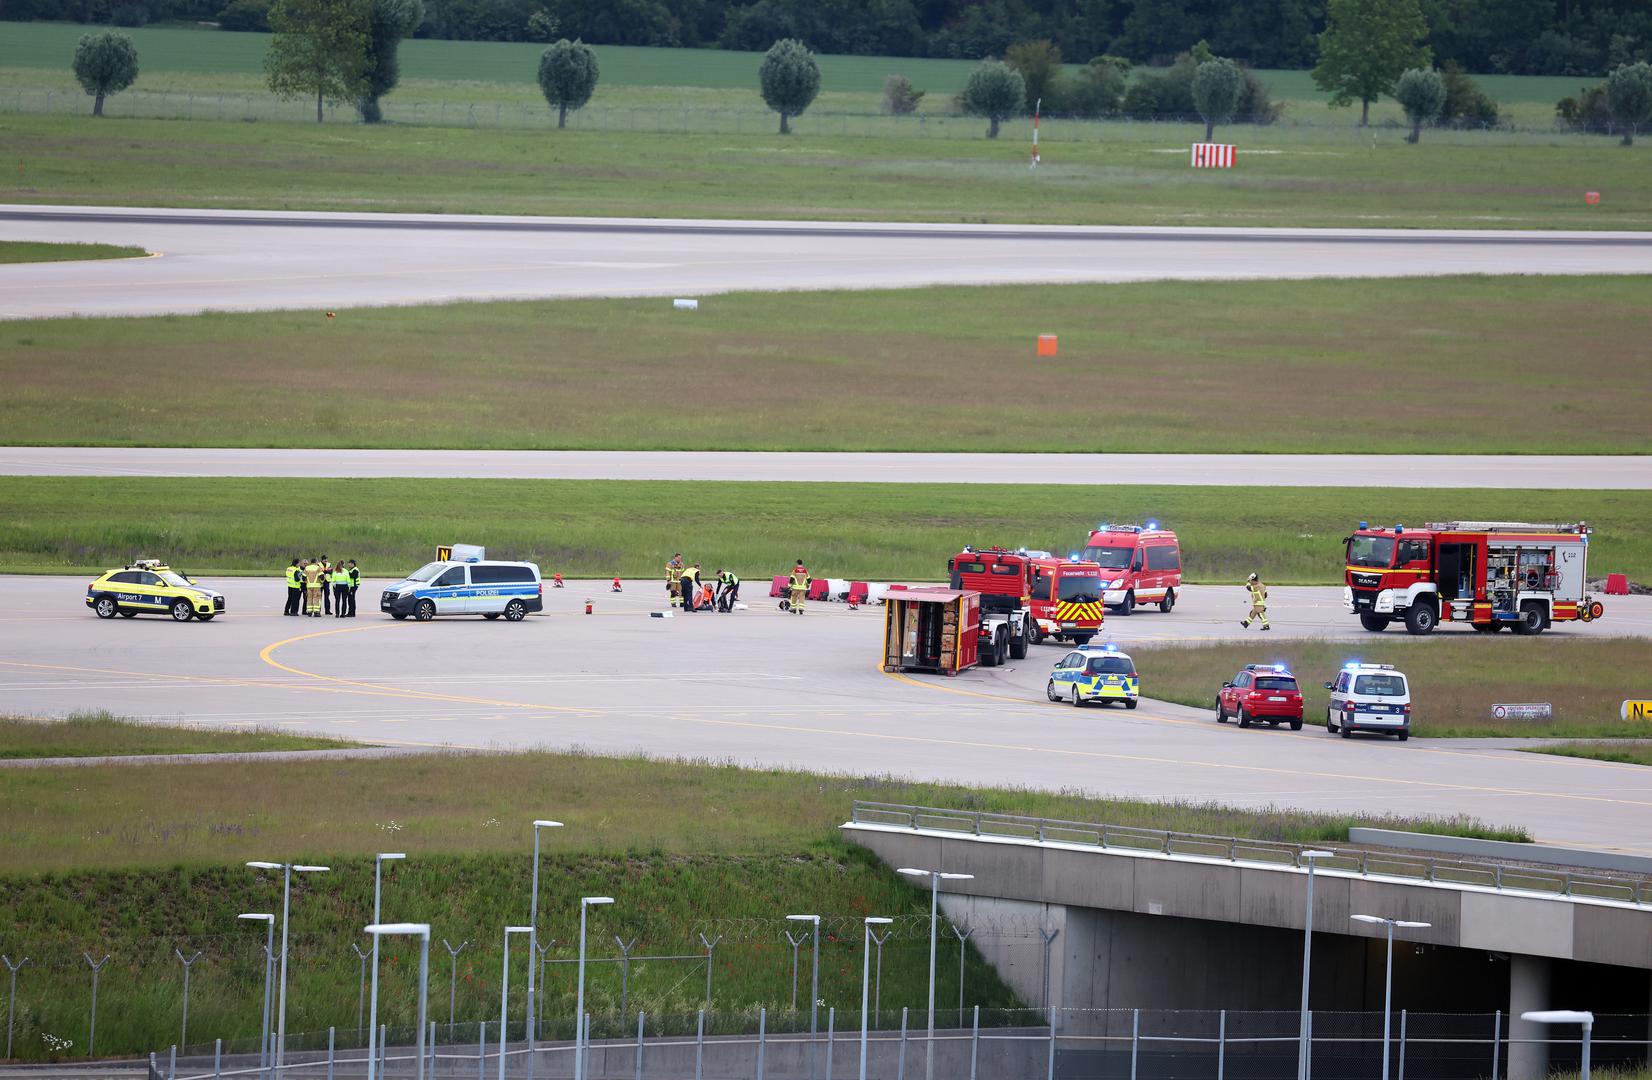 Njemačka policija uhitila je osam klimatskih aktivista koji su u subotu upali u zračnu luku u Münchenu, zbog čega je nakratko zatvorena te je otkazano oko 60 letova.